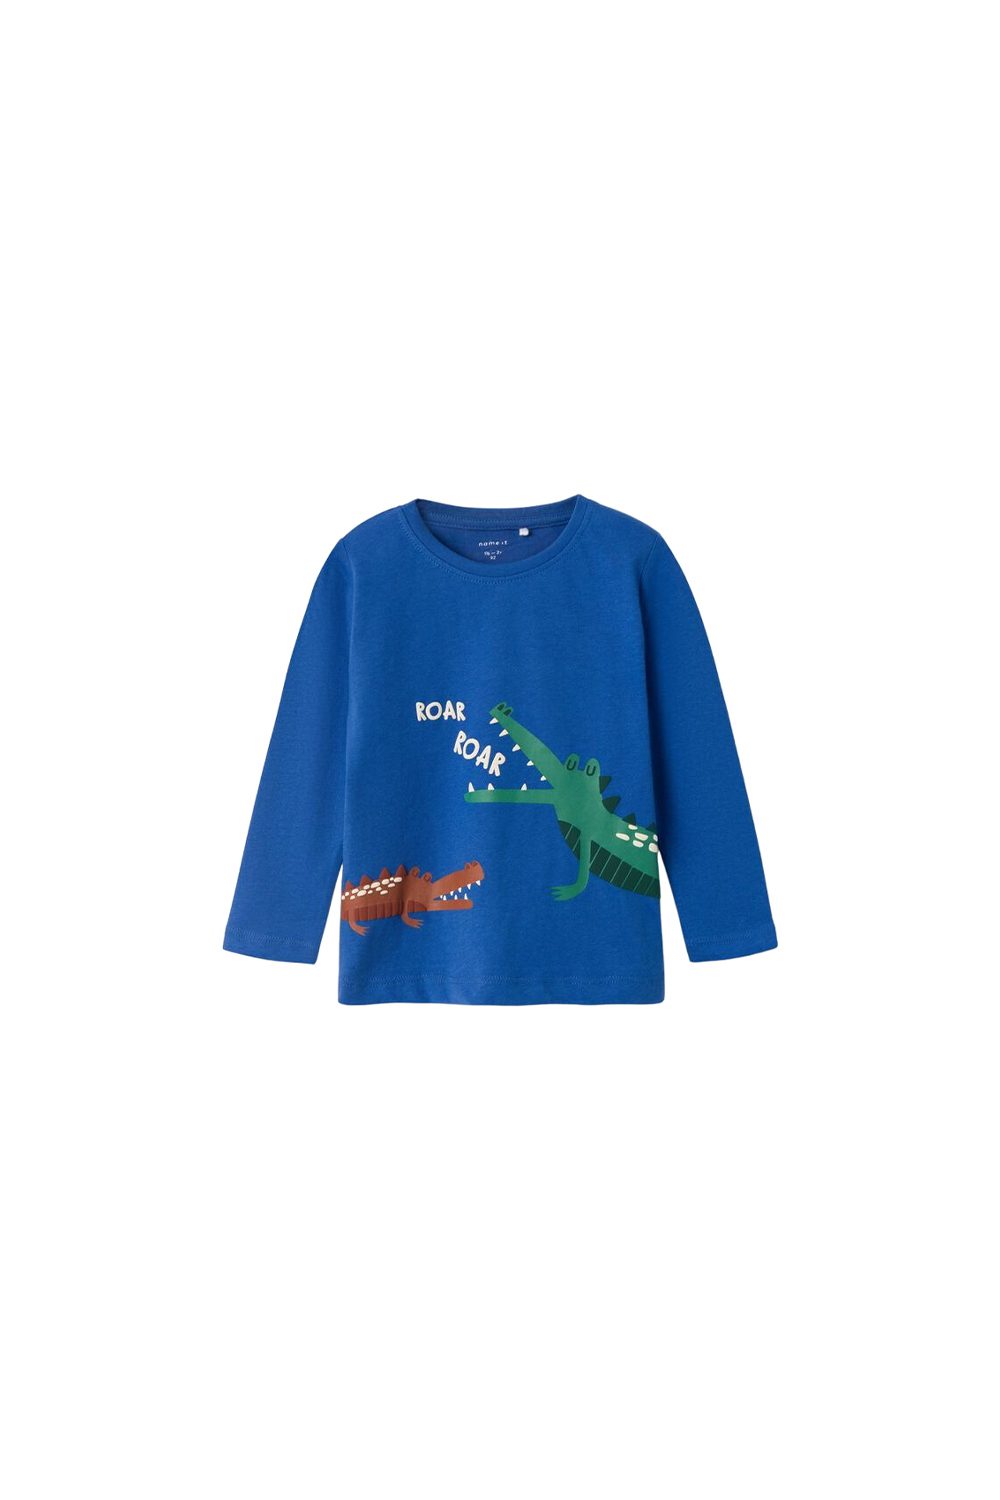 Παιδική Μπλούζα Για Αγόρι NAME IT 13220017 Μπλε